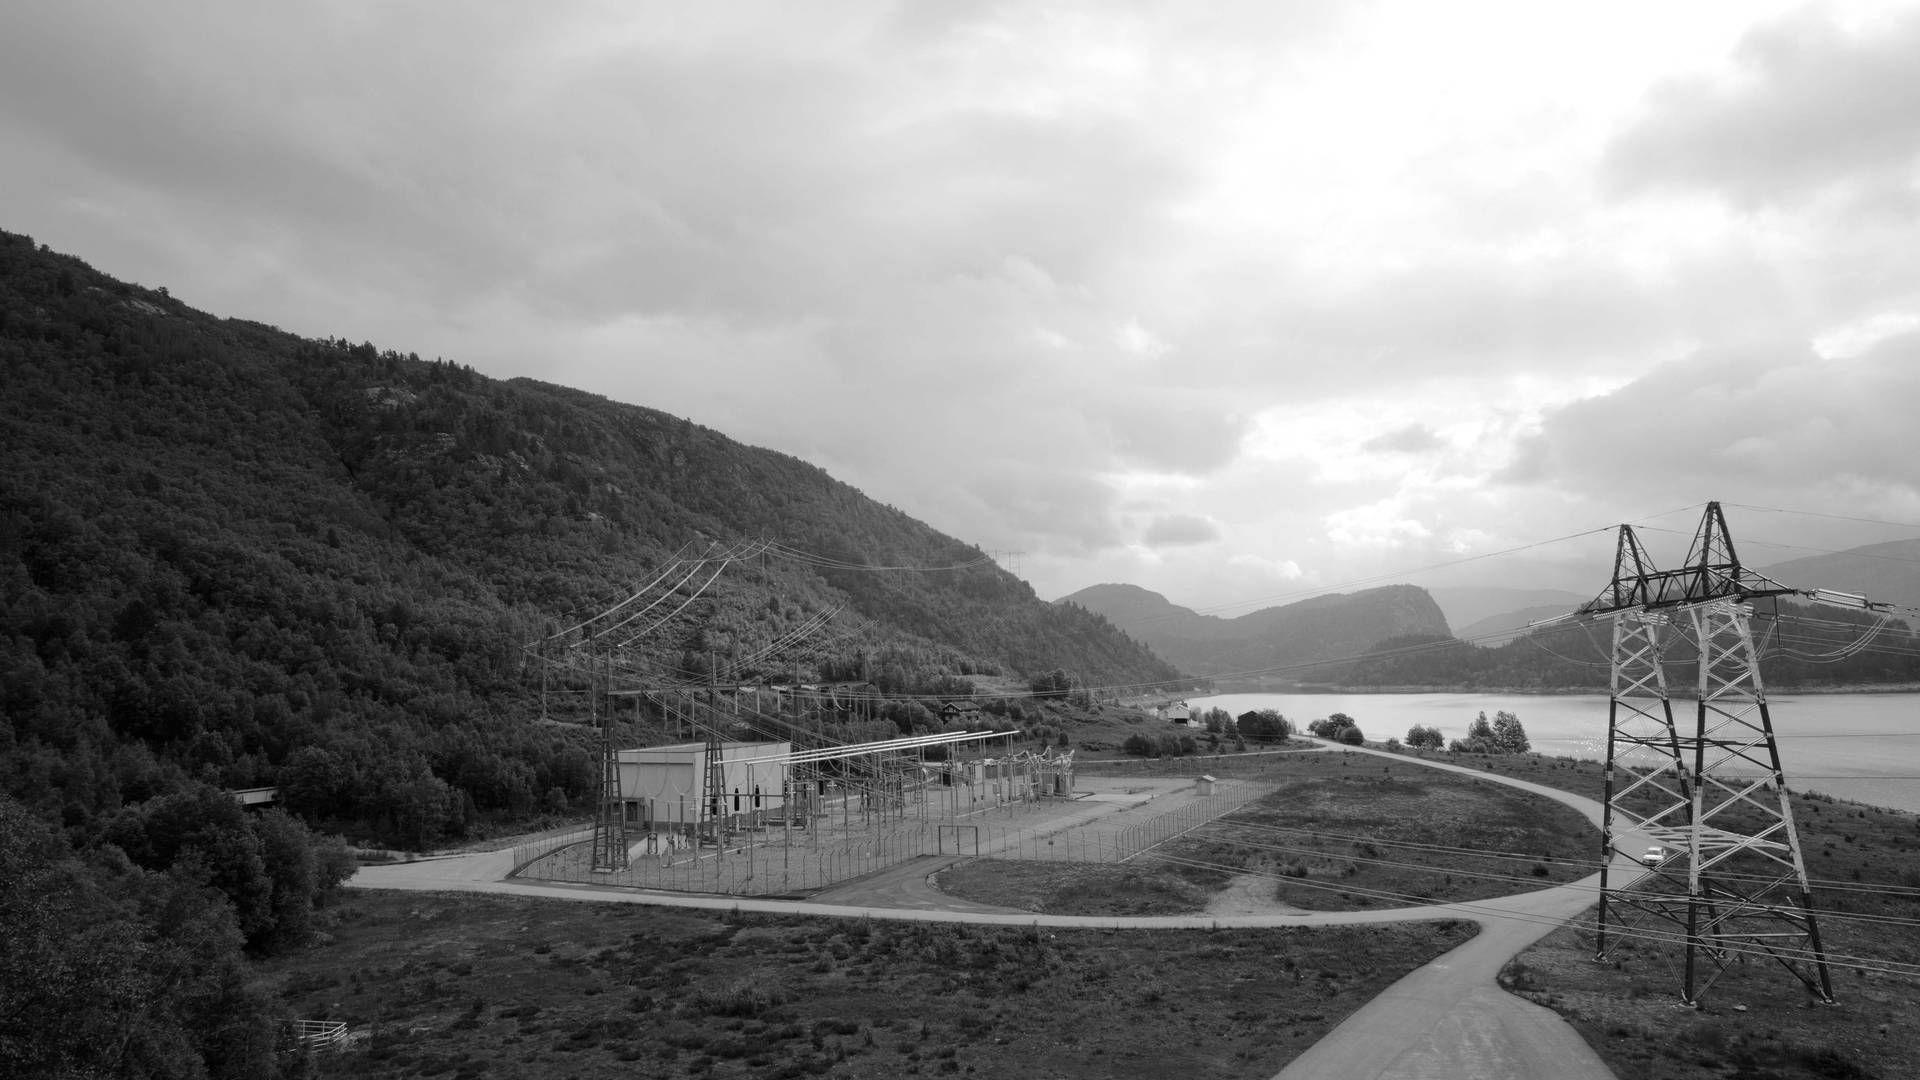 Holen kraftverk ligger ved Botsvatn. Det planlagte pumpekraftverket skulle ligge mellom Botsvatn og Vatnedalsvatn. Foto: Agder Energi